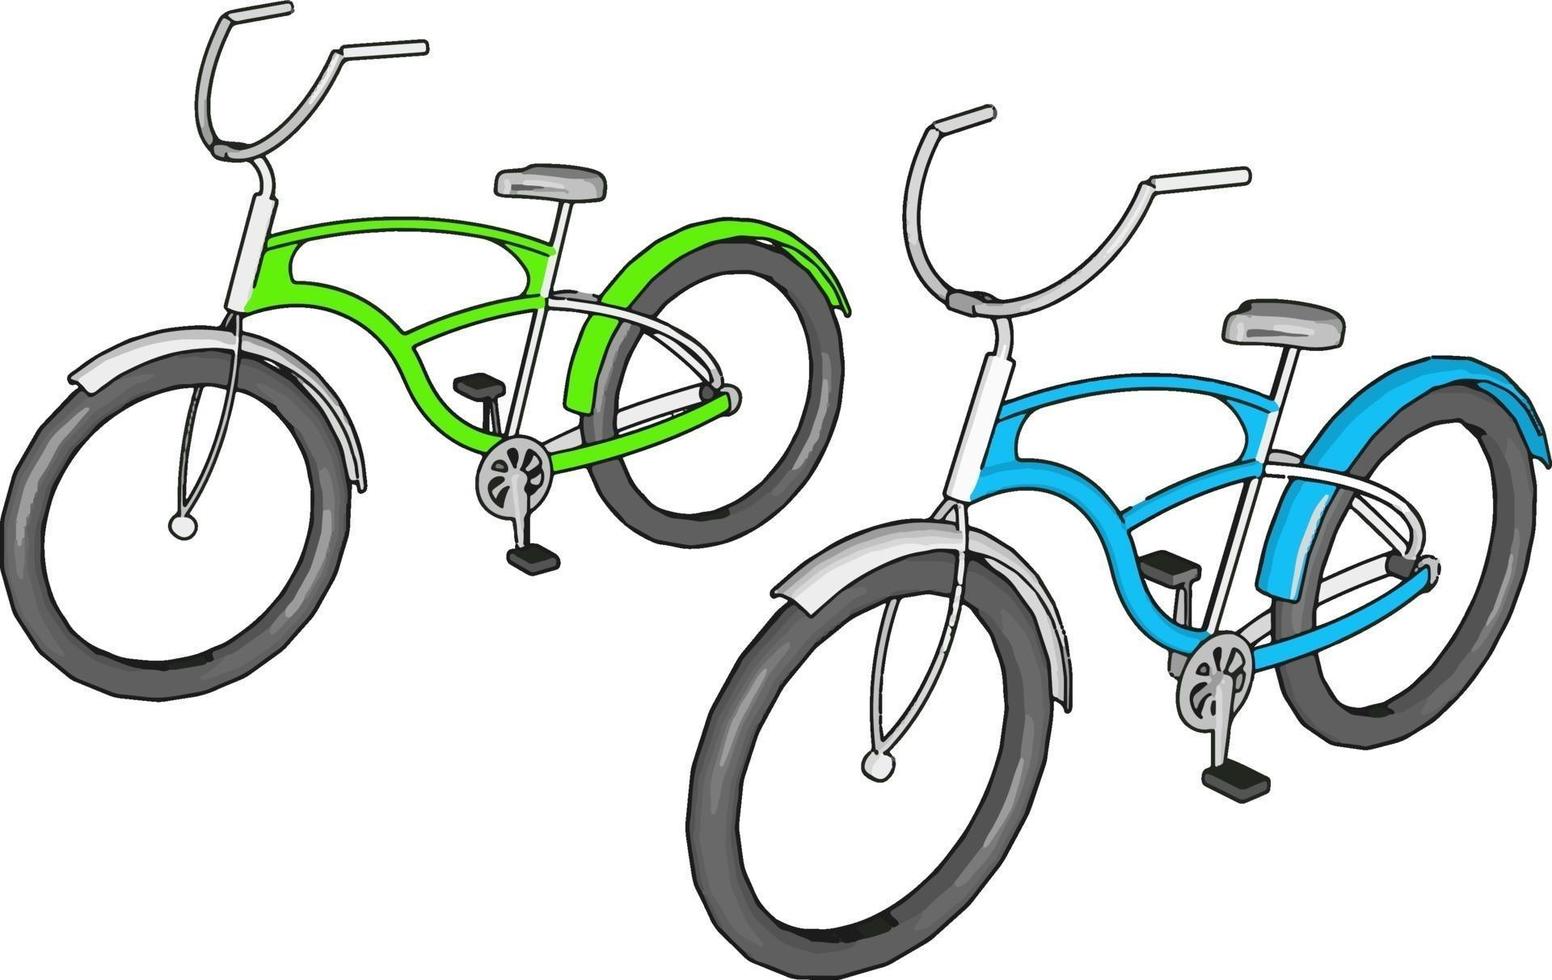 vélo vert et bleu, illustration, vecteur sur fond blanc.